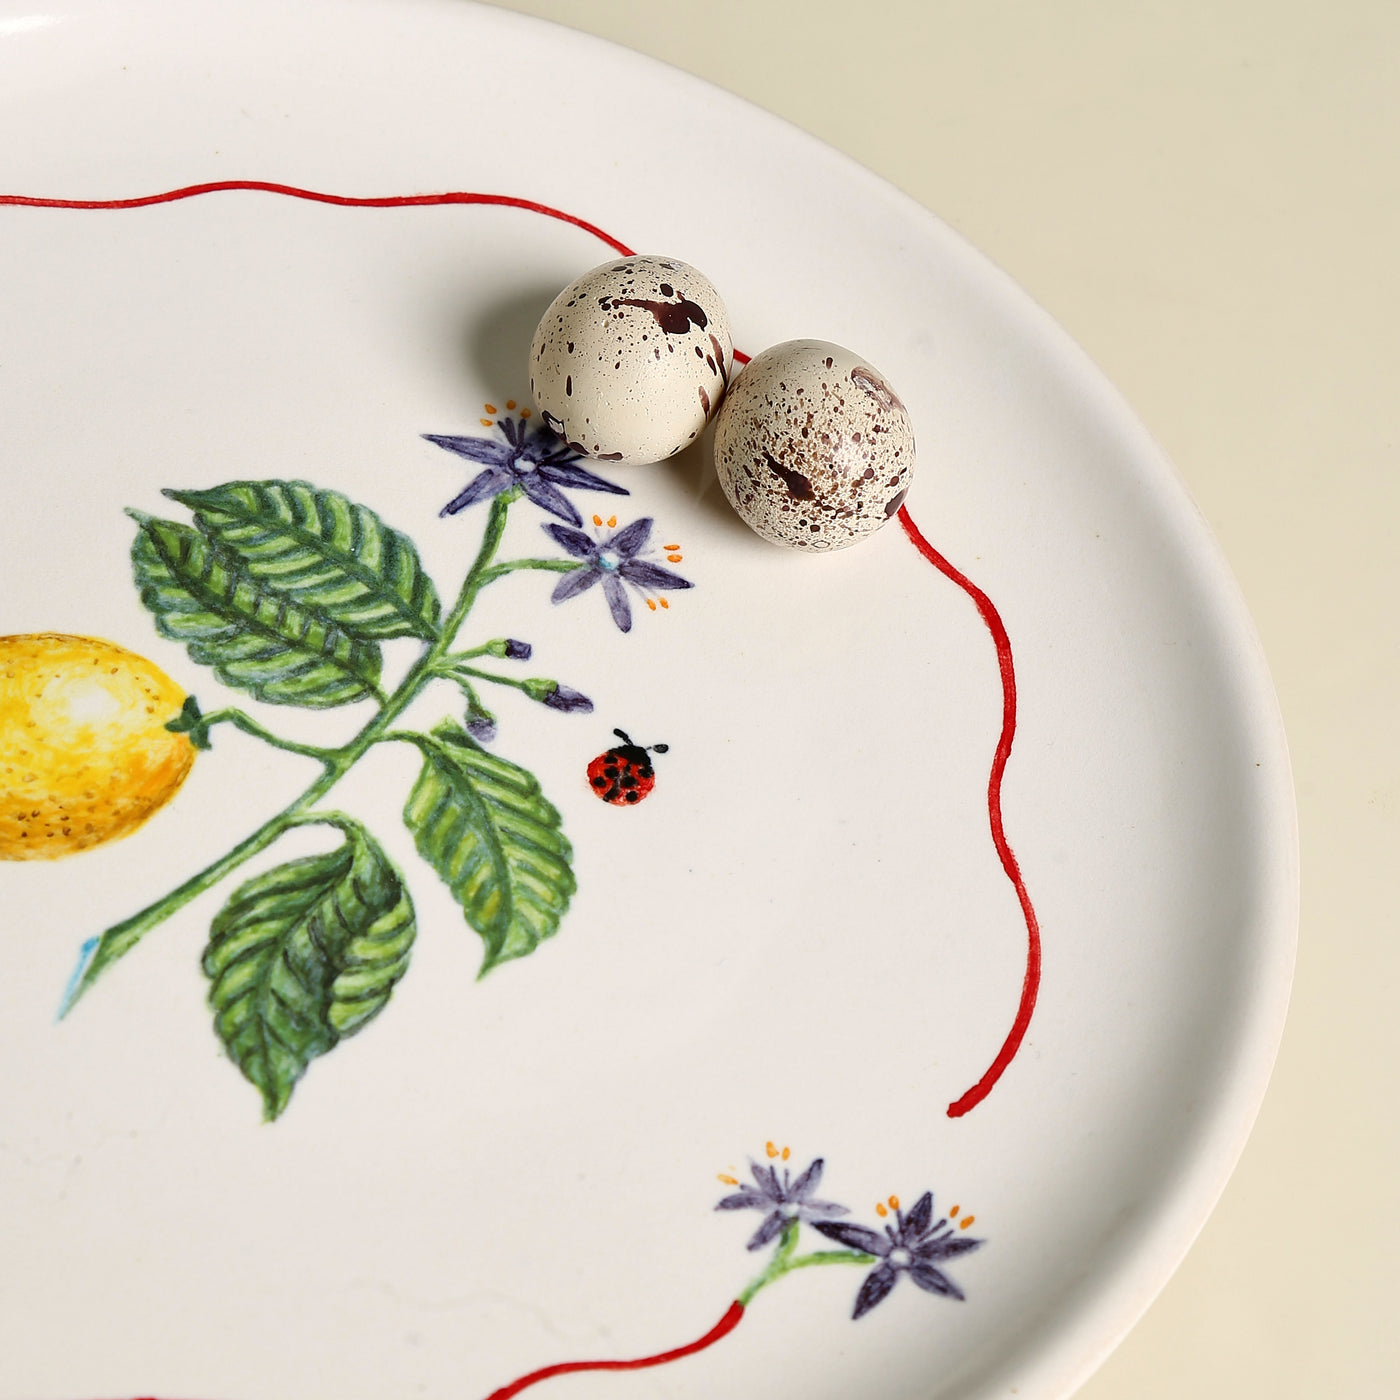 Summer Harvest Lemon Dinner Plate with ladybug detailing and lemon vine from Terravida